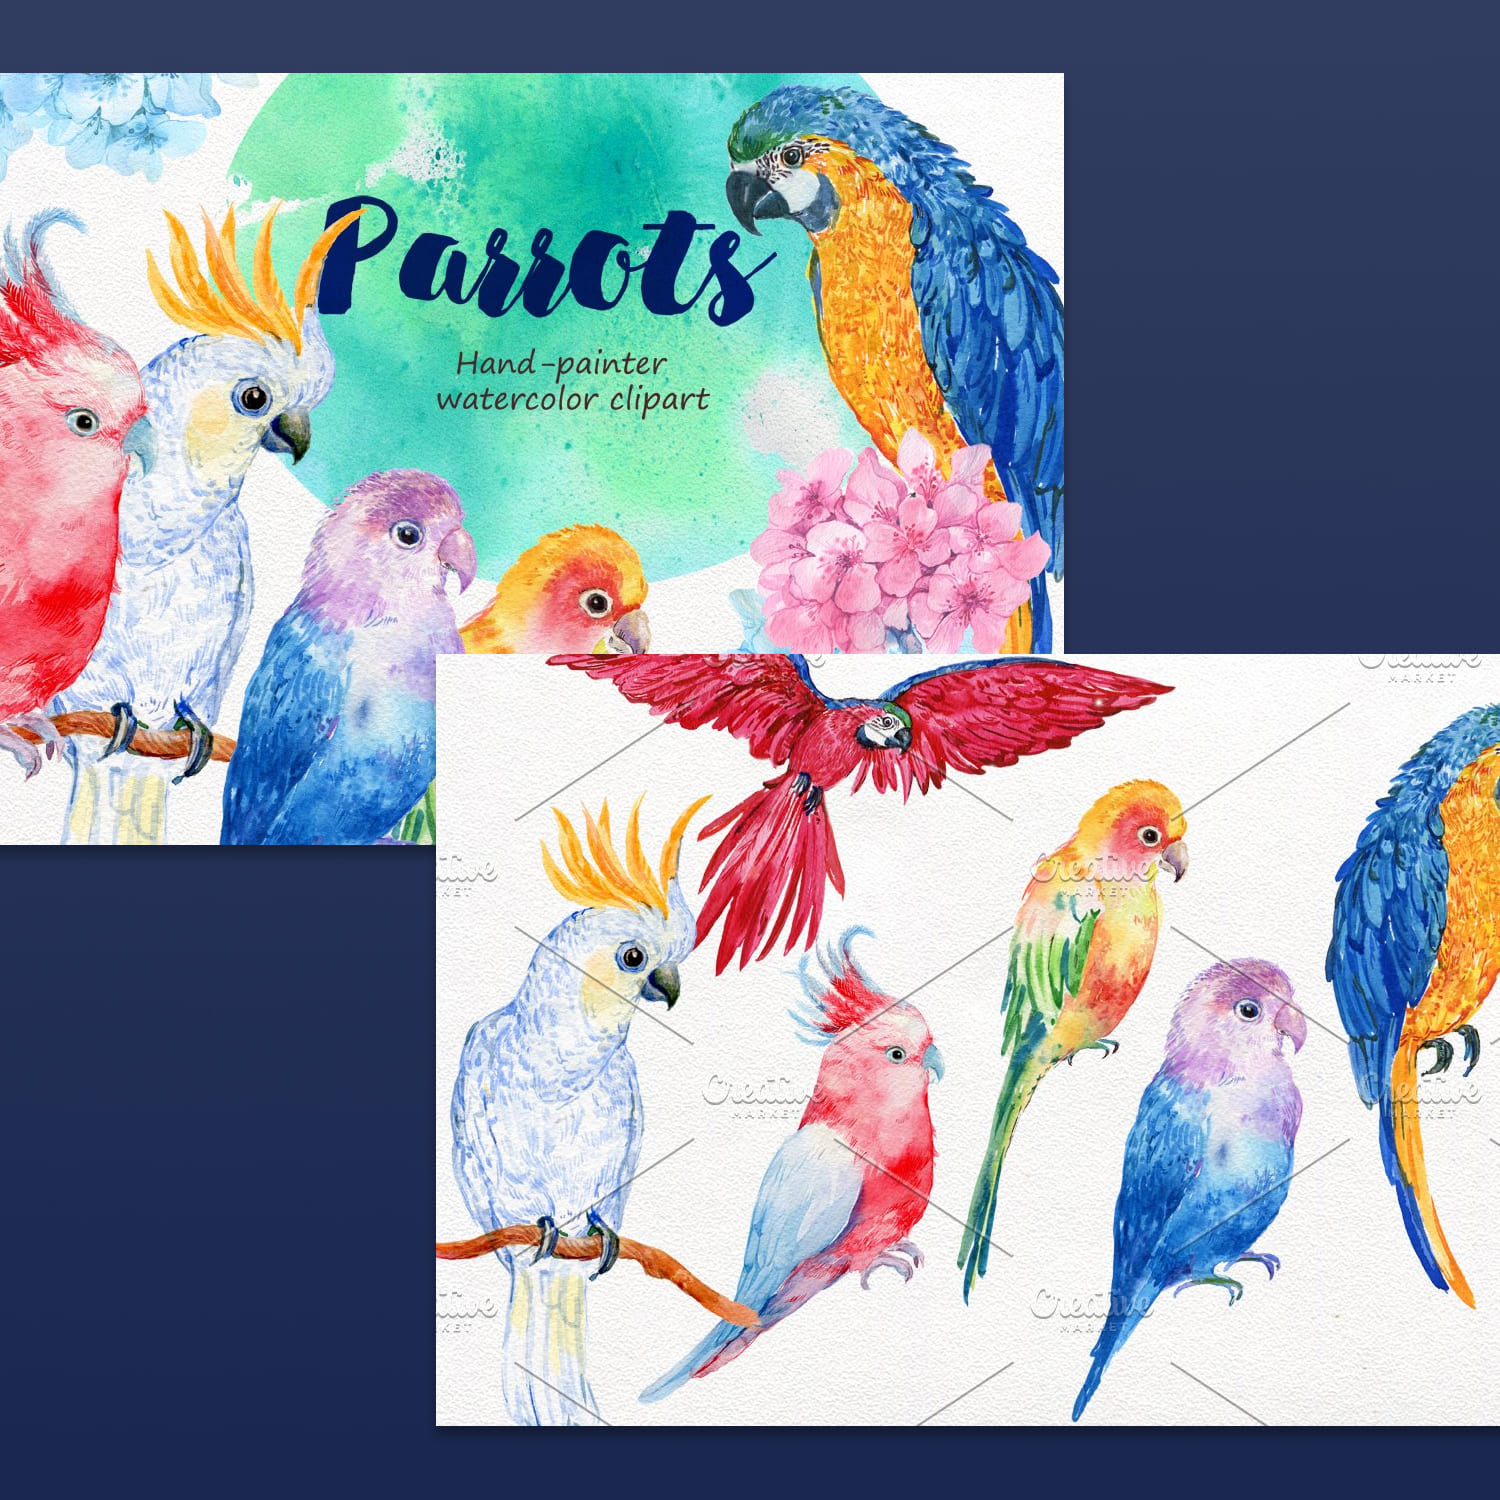 6 birds parrots watercolor created by MitrushovaArt.